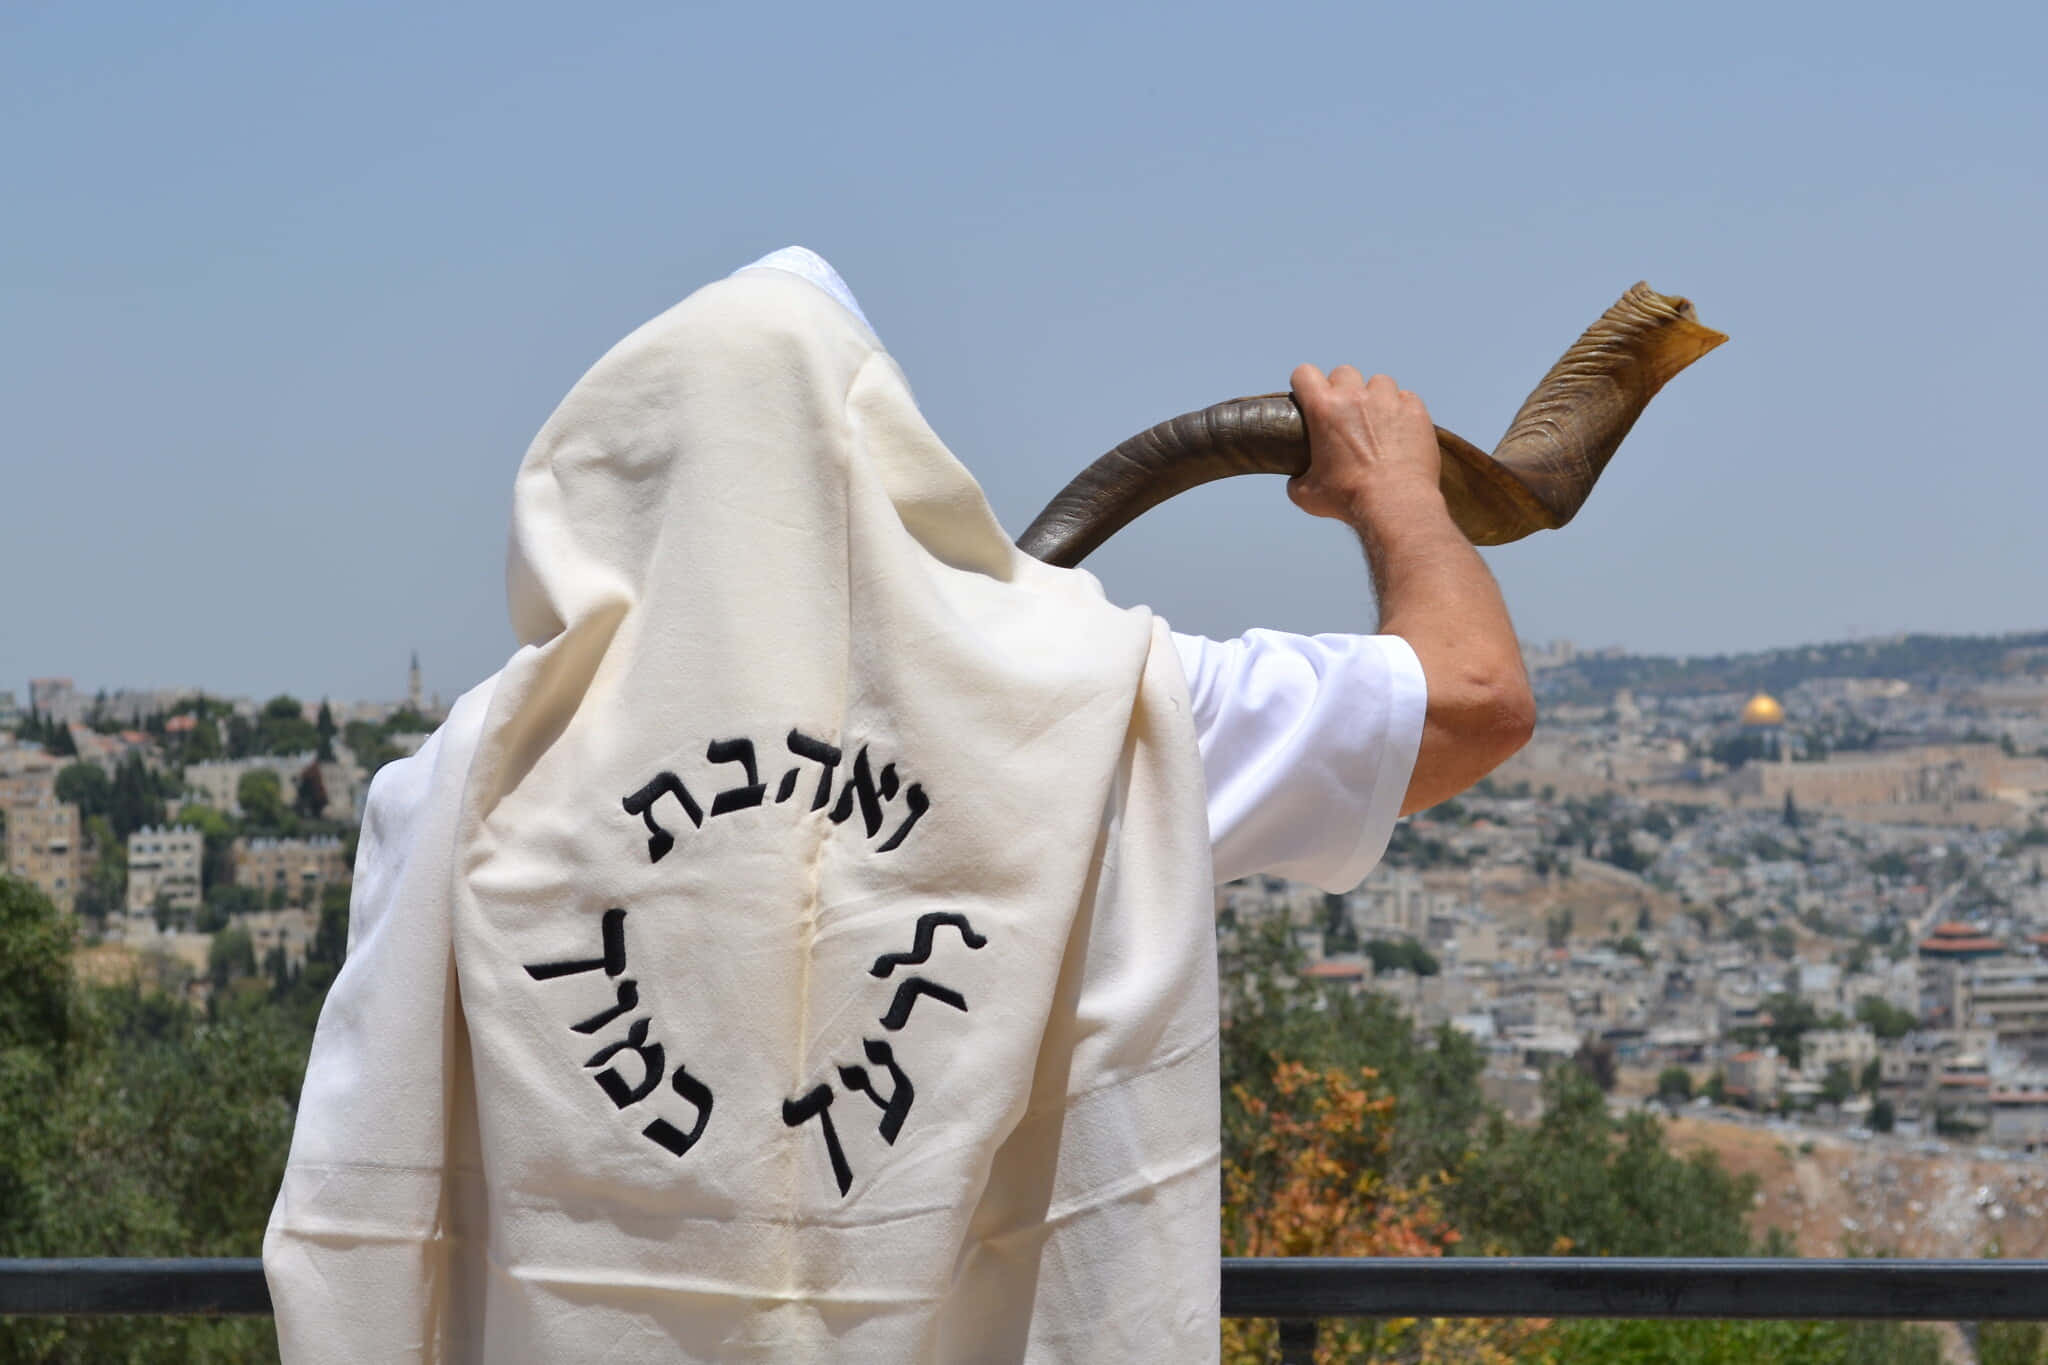 Caption: Celebrating Rosh Hashanah - Traditional Jewish New Year Background